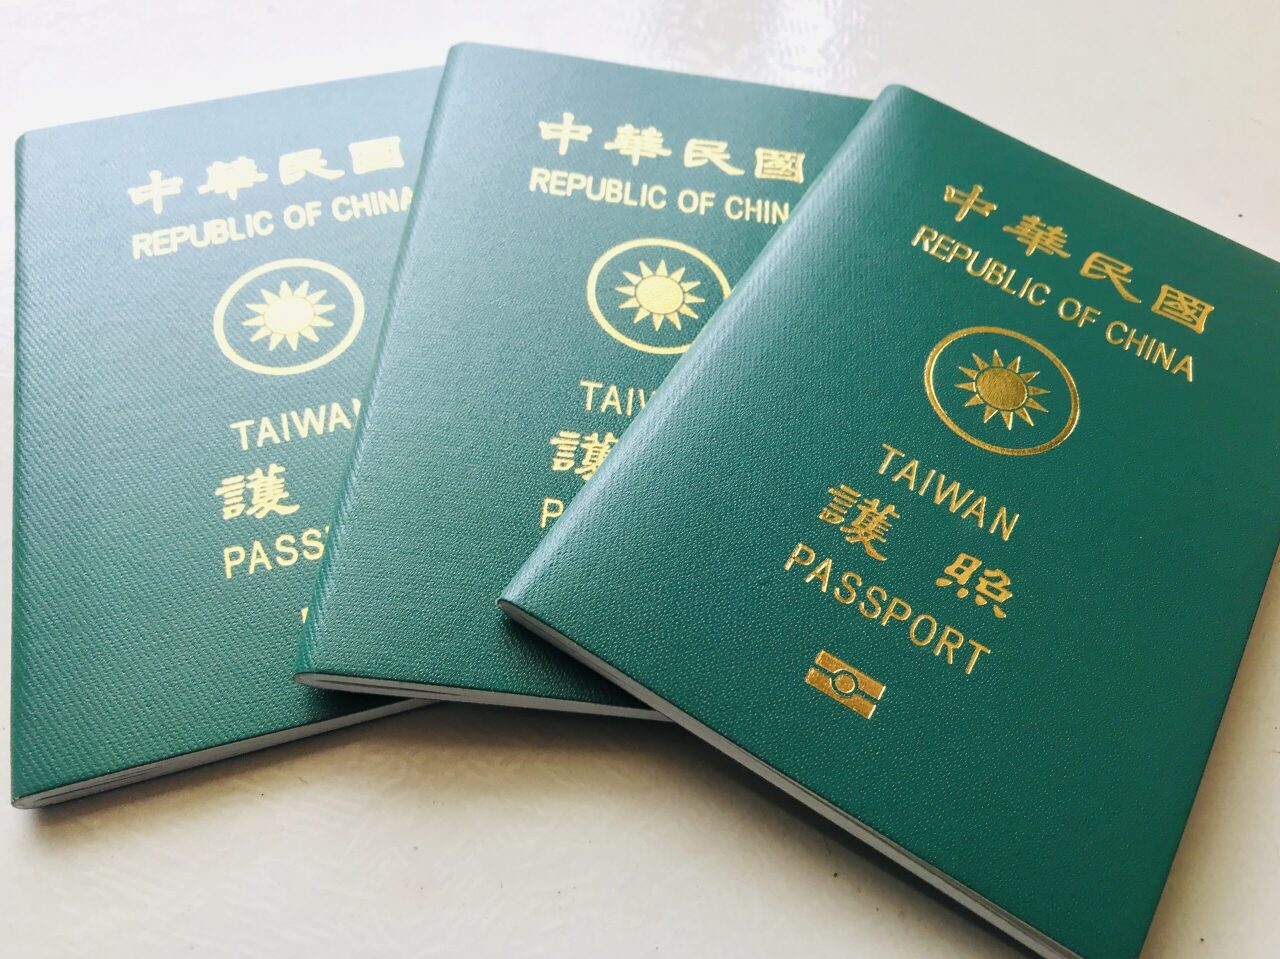 Le passeport taïwanais classé 31e le plus puissant du monde